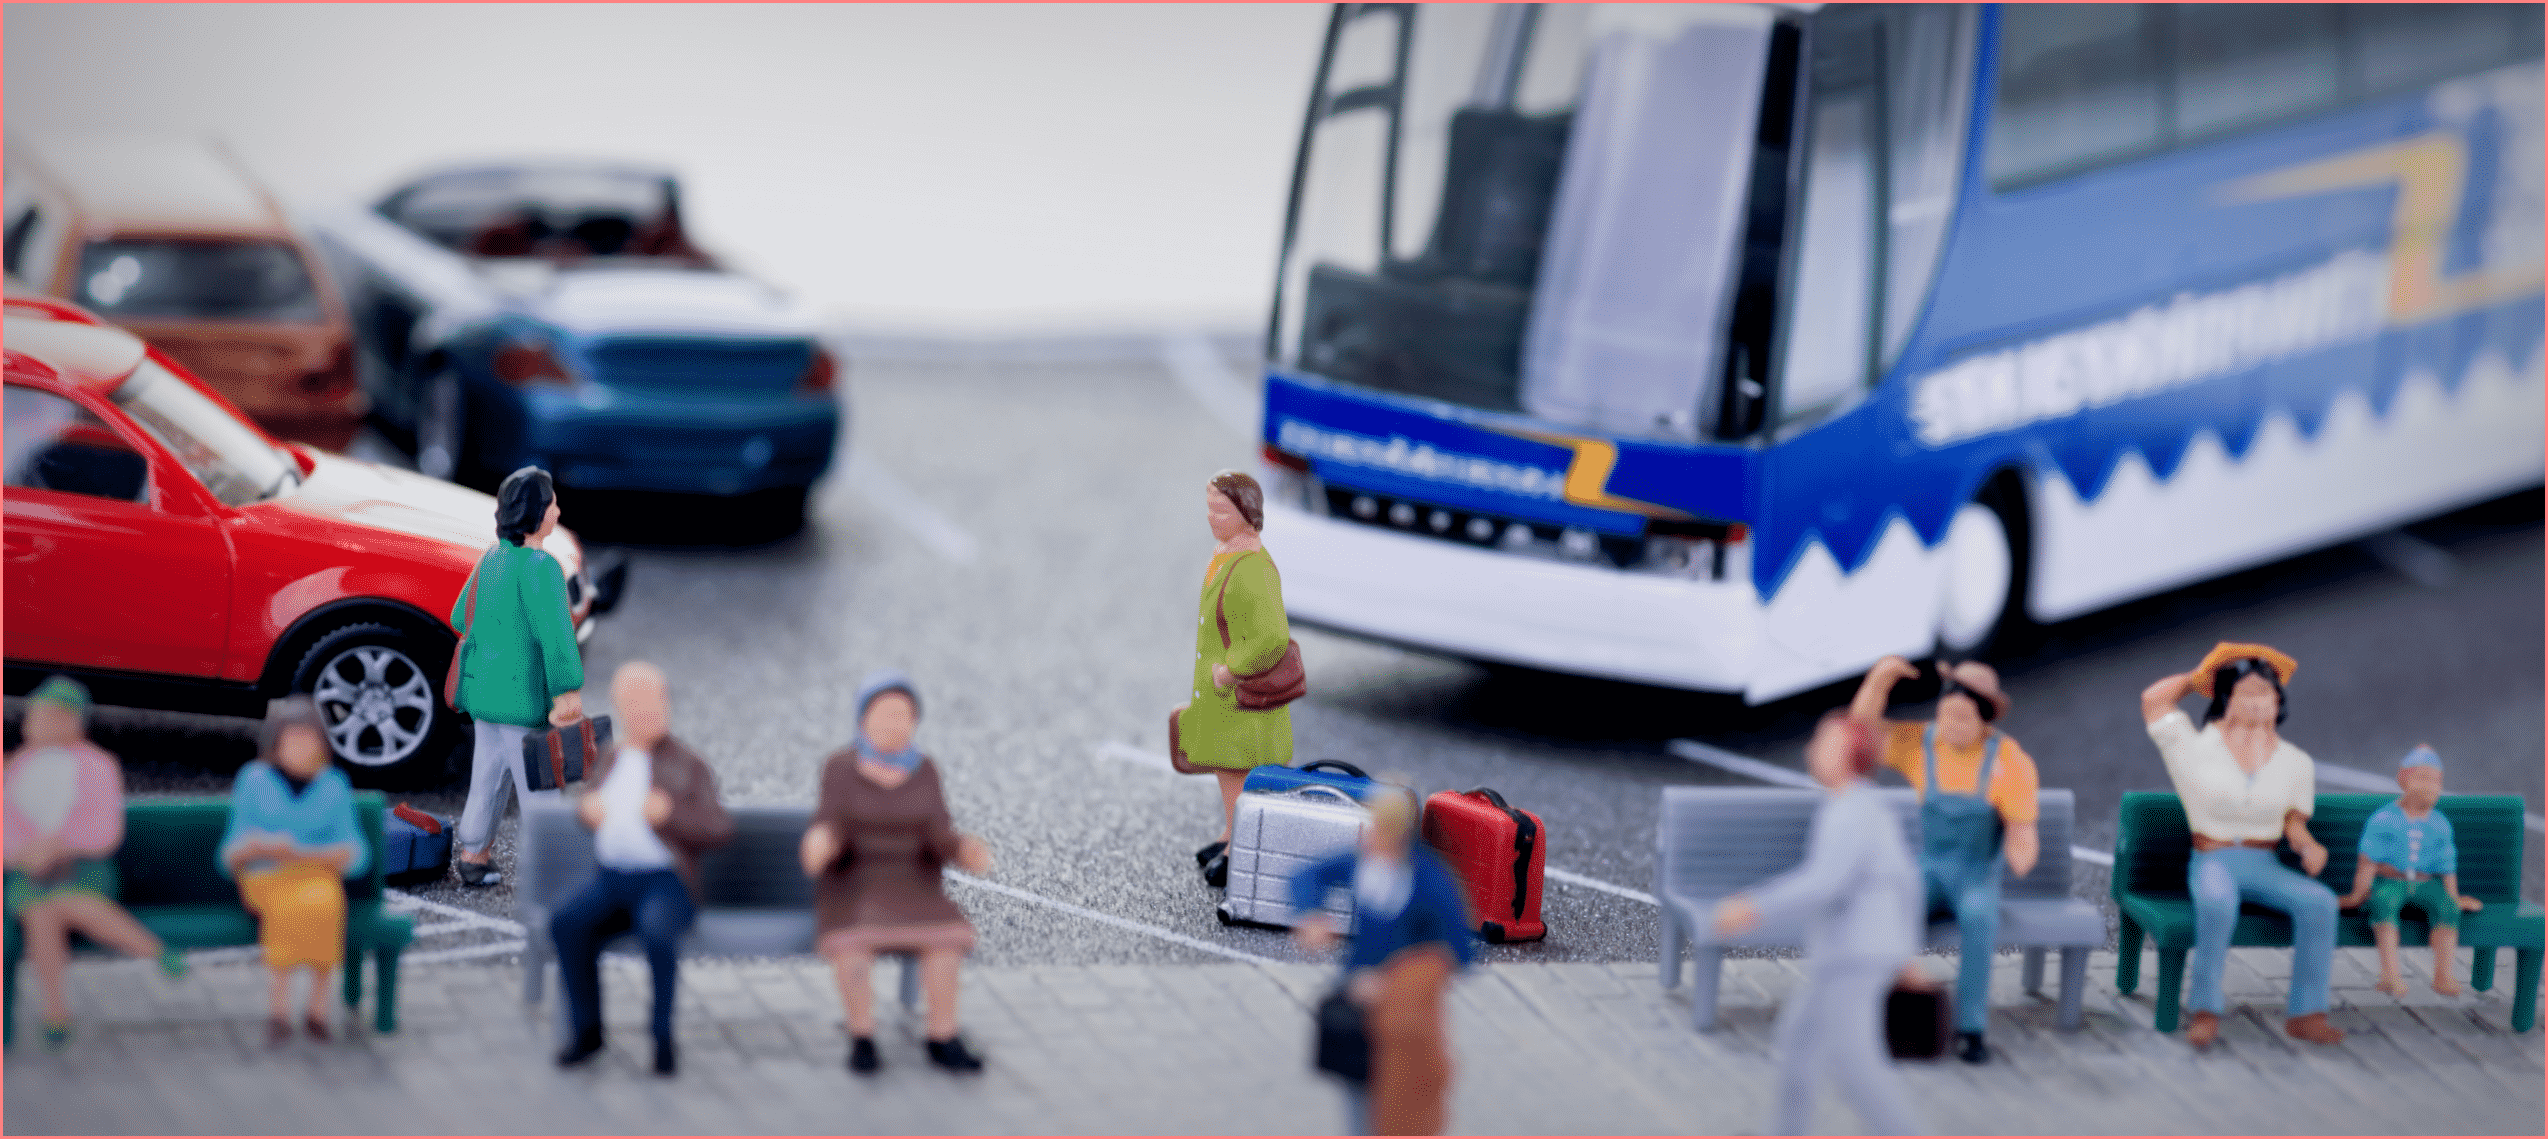 Безопасность багажа в автобусе дальнего следования Следующий сценарий возникает